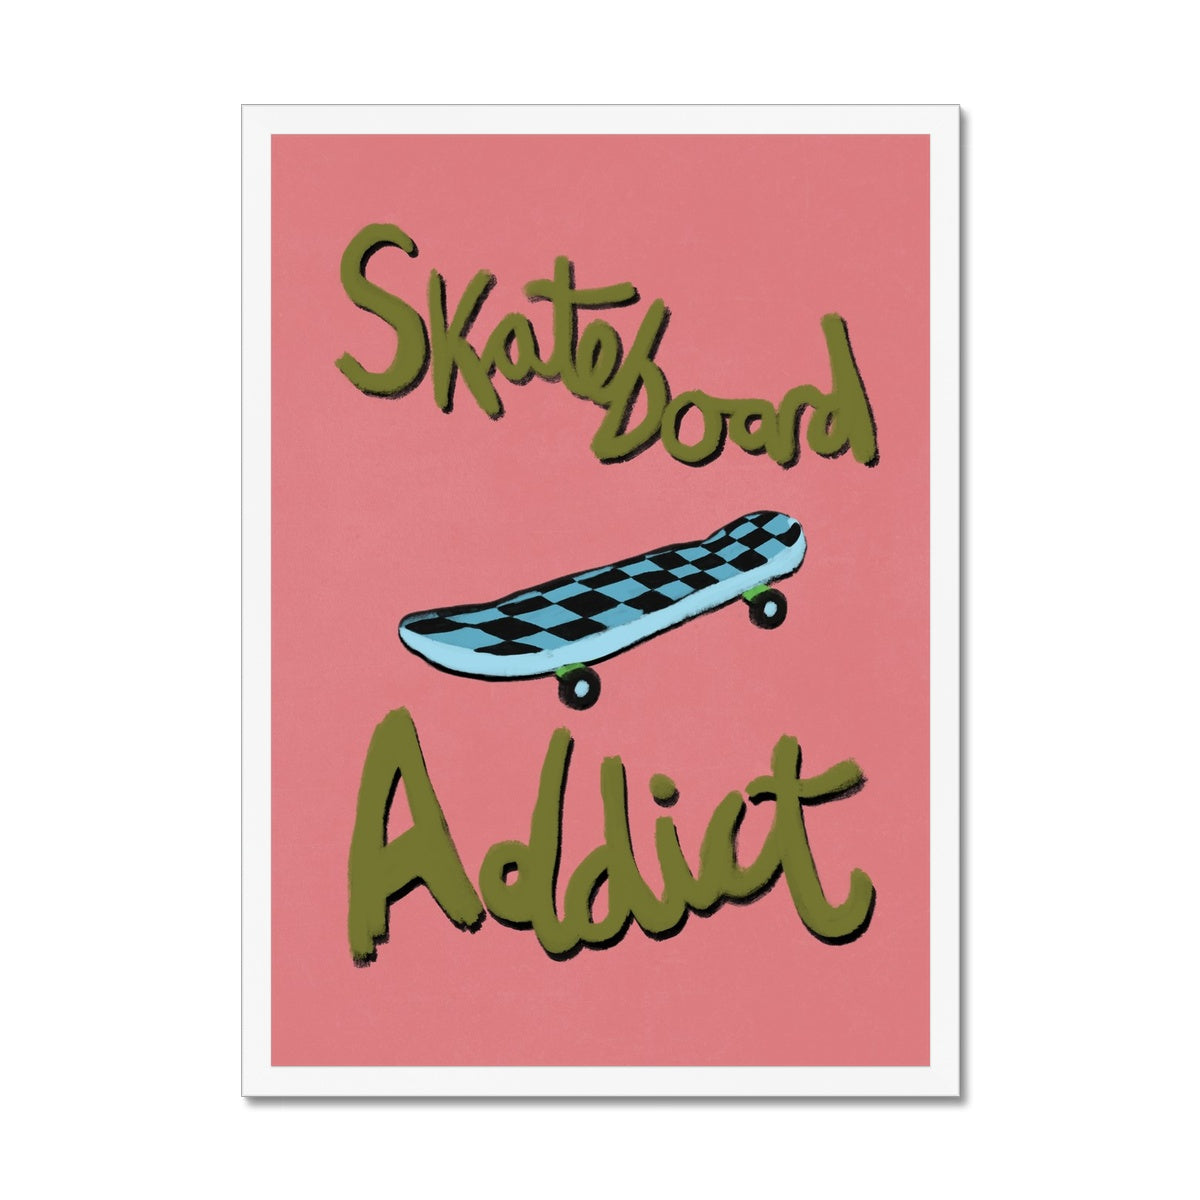 Skateboard Addict - Coral, Olive Green, Blue Framed Print